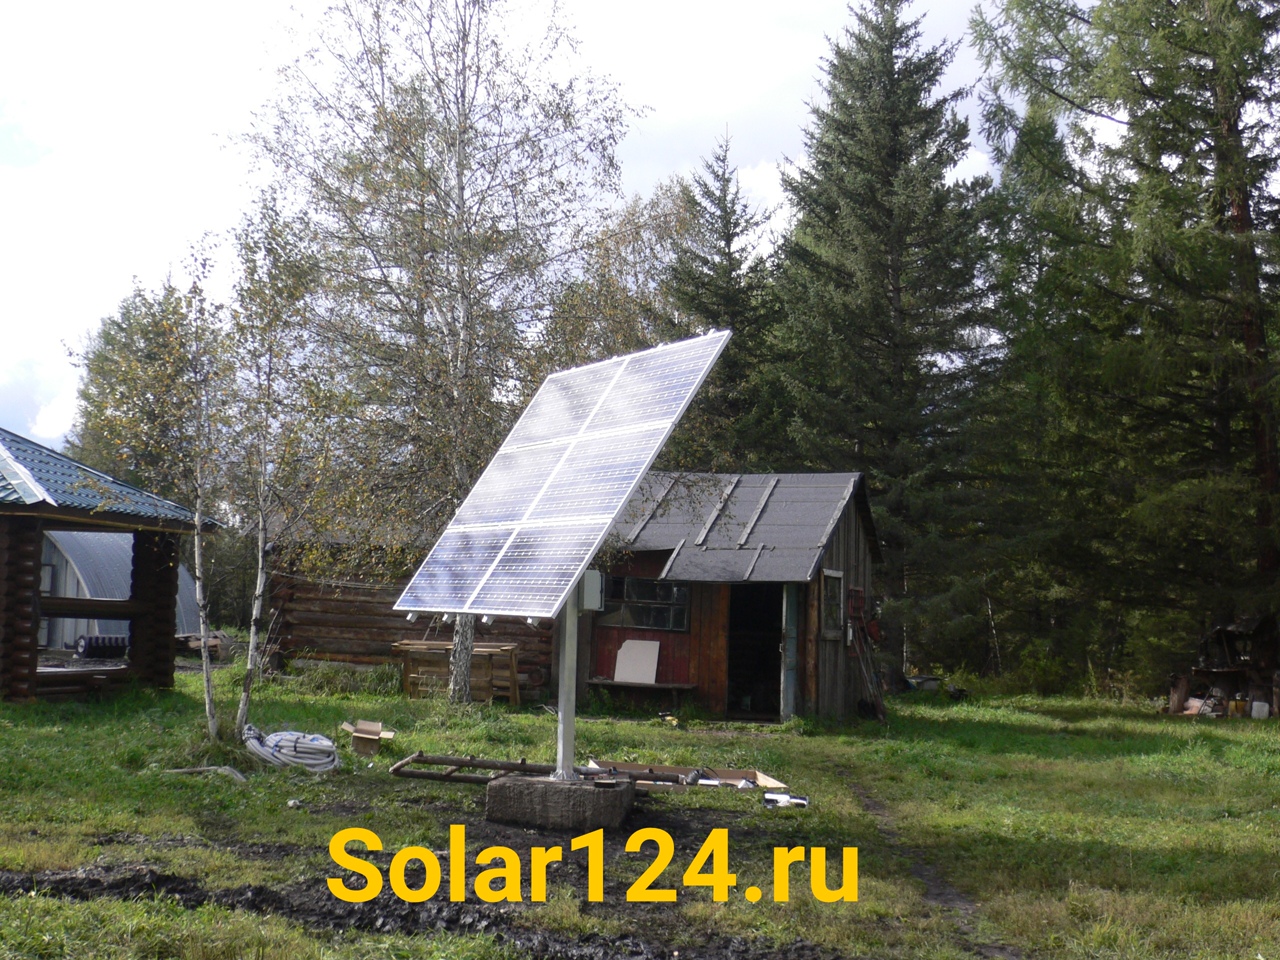 Автономная солнечная электростанция. Республика Хакасия. База в тайге